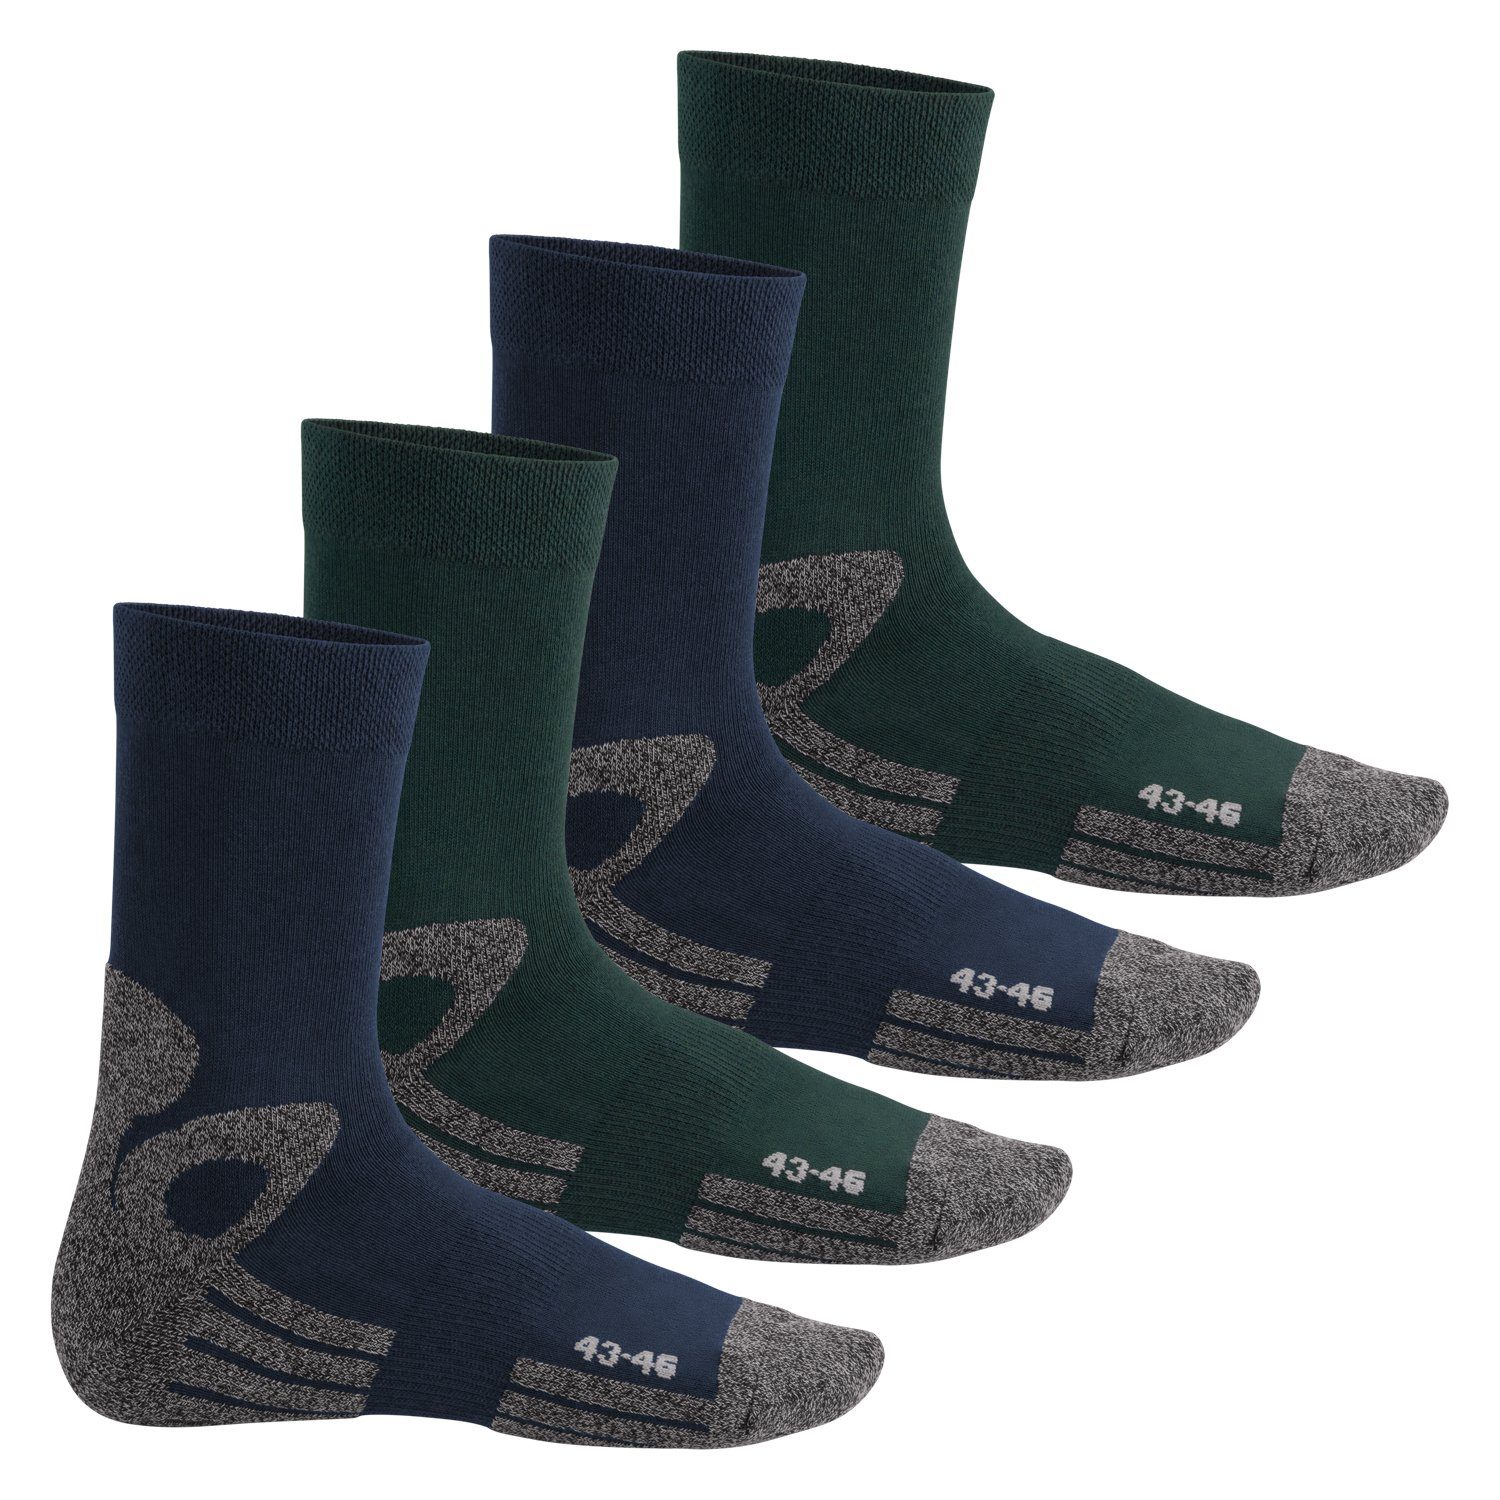 celodoro Arbeitssocken Trekking-Socken für Damen & Herren (4 Paar) mit Frotteesohle Blau-Grün